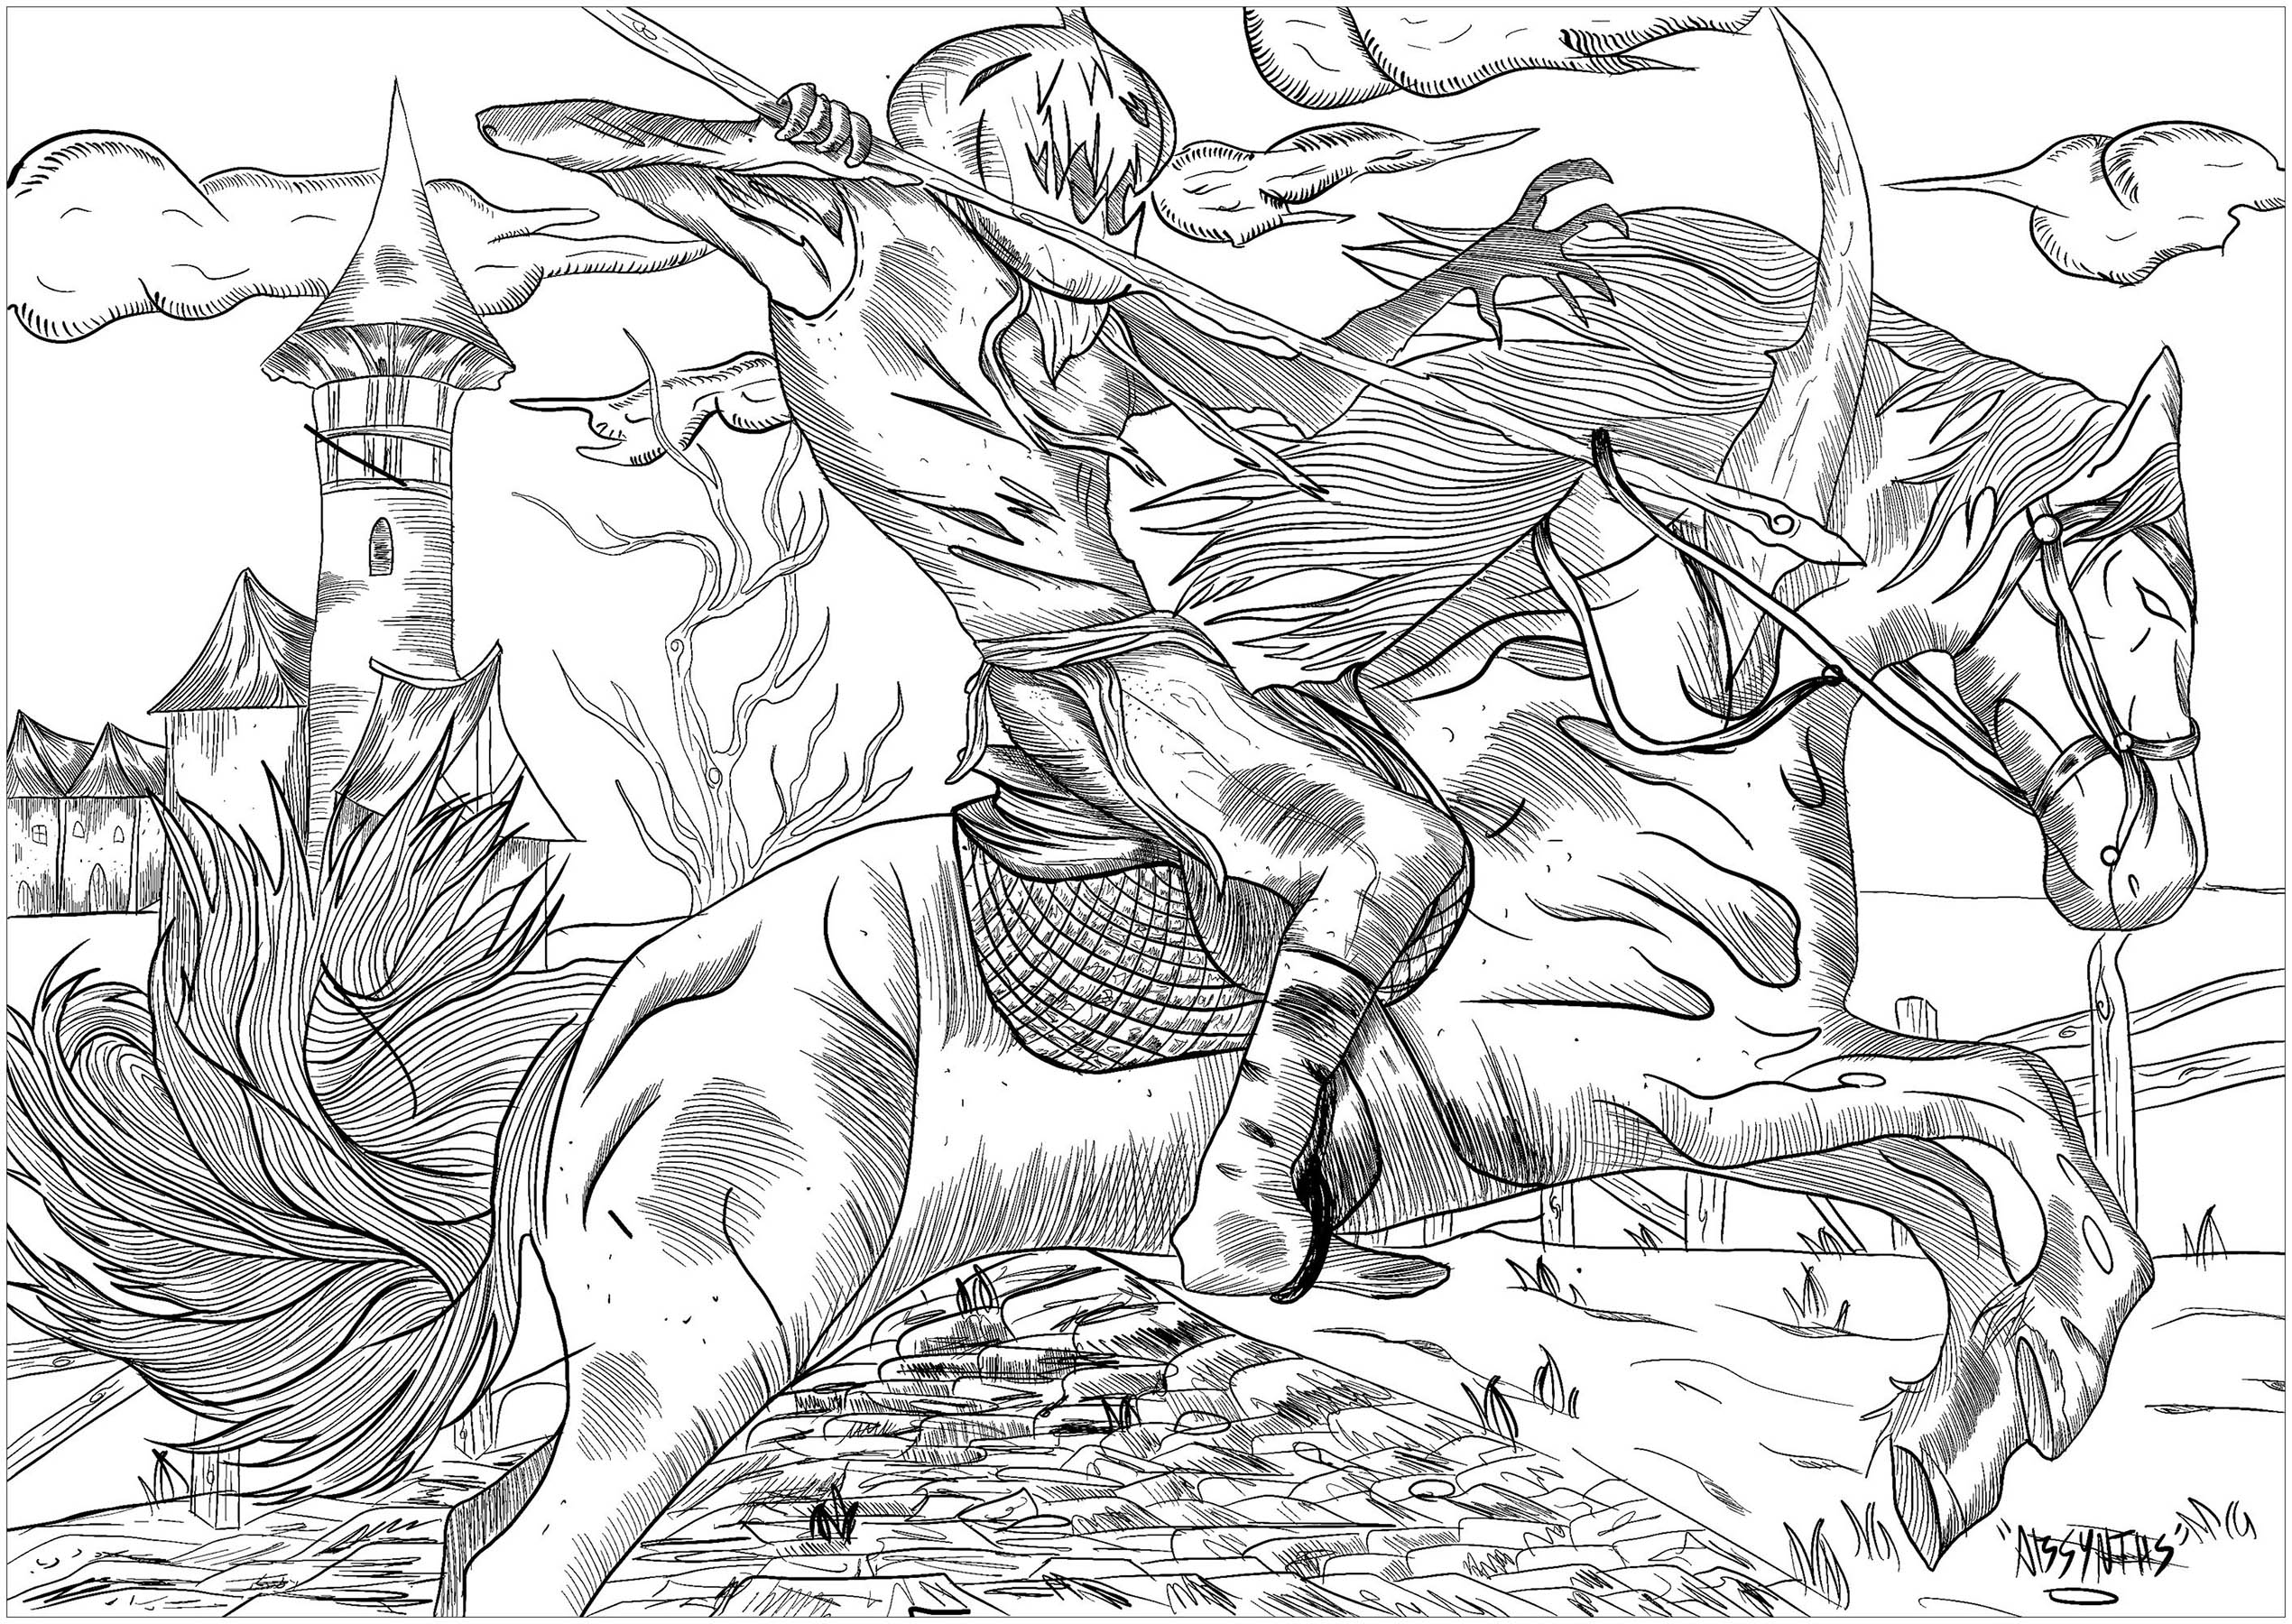 Um cavaleiro malvado com uma cabeça de abóbora, montado no seu cavalo fantasmagórico ... Um verdadeiro pesadelo para colorir !, Artista : Absynths